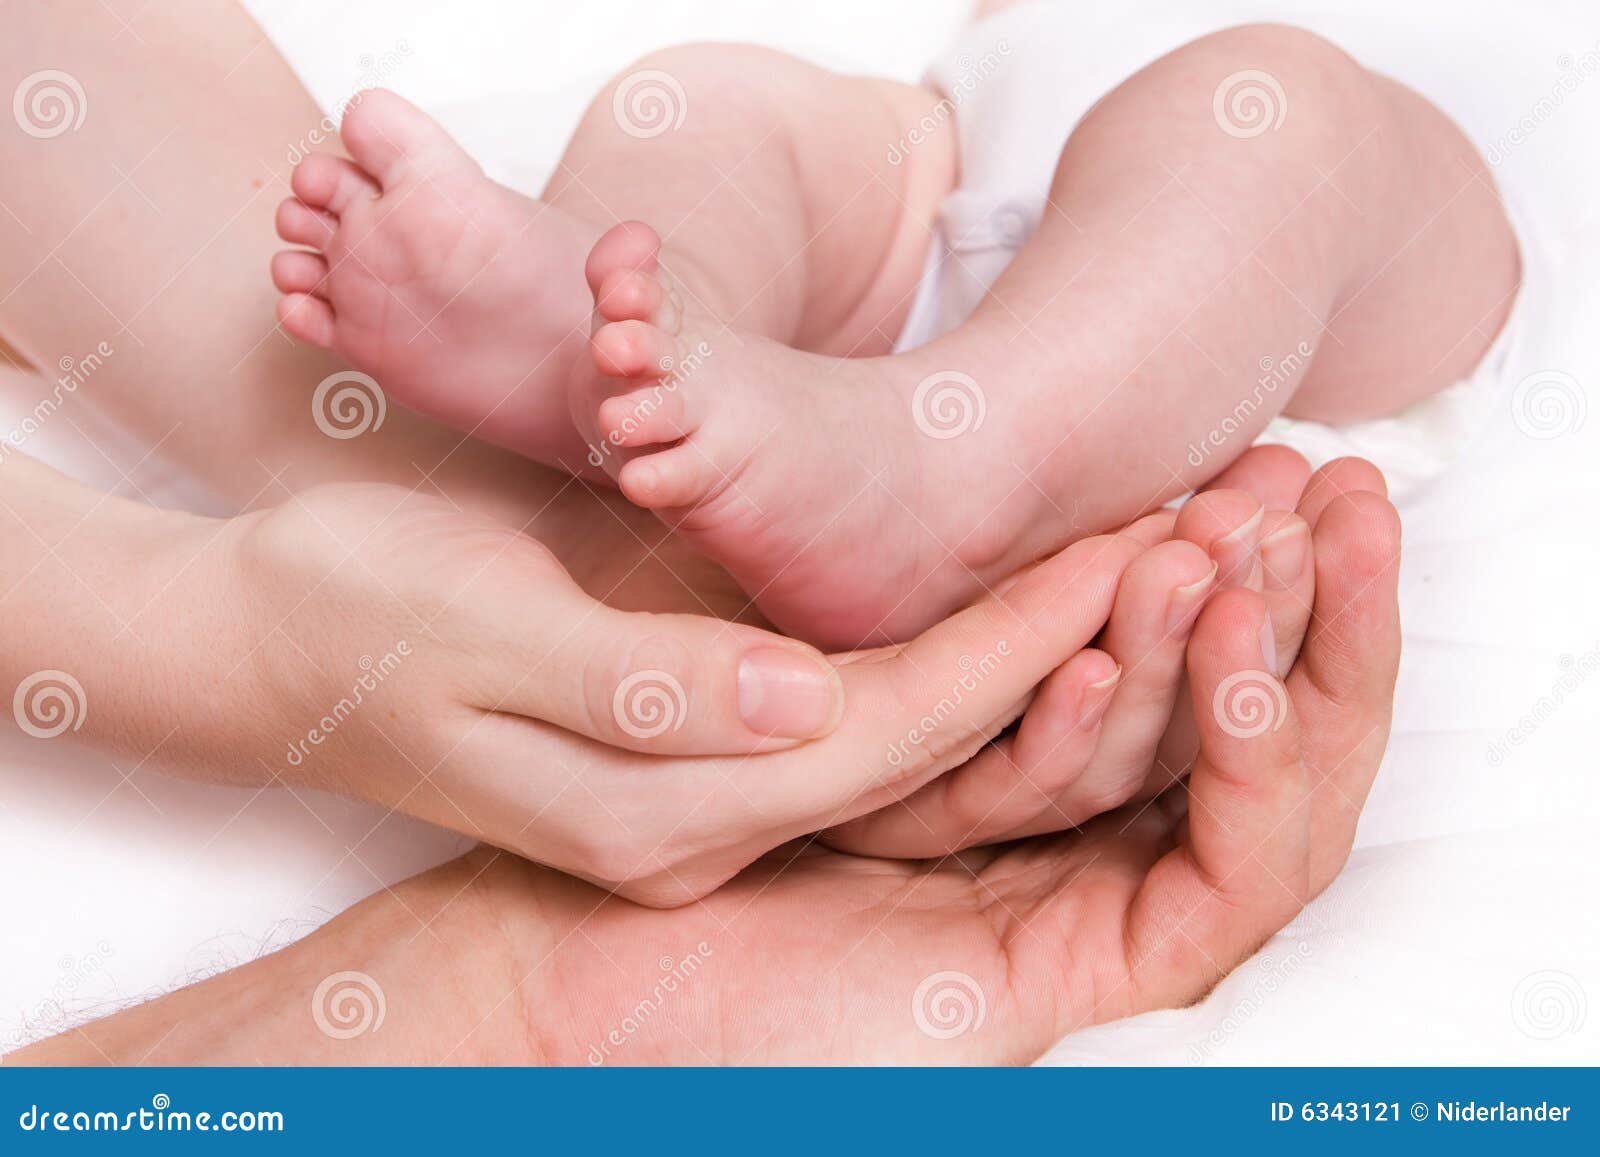 baby foots in hands of parents